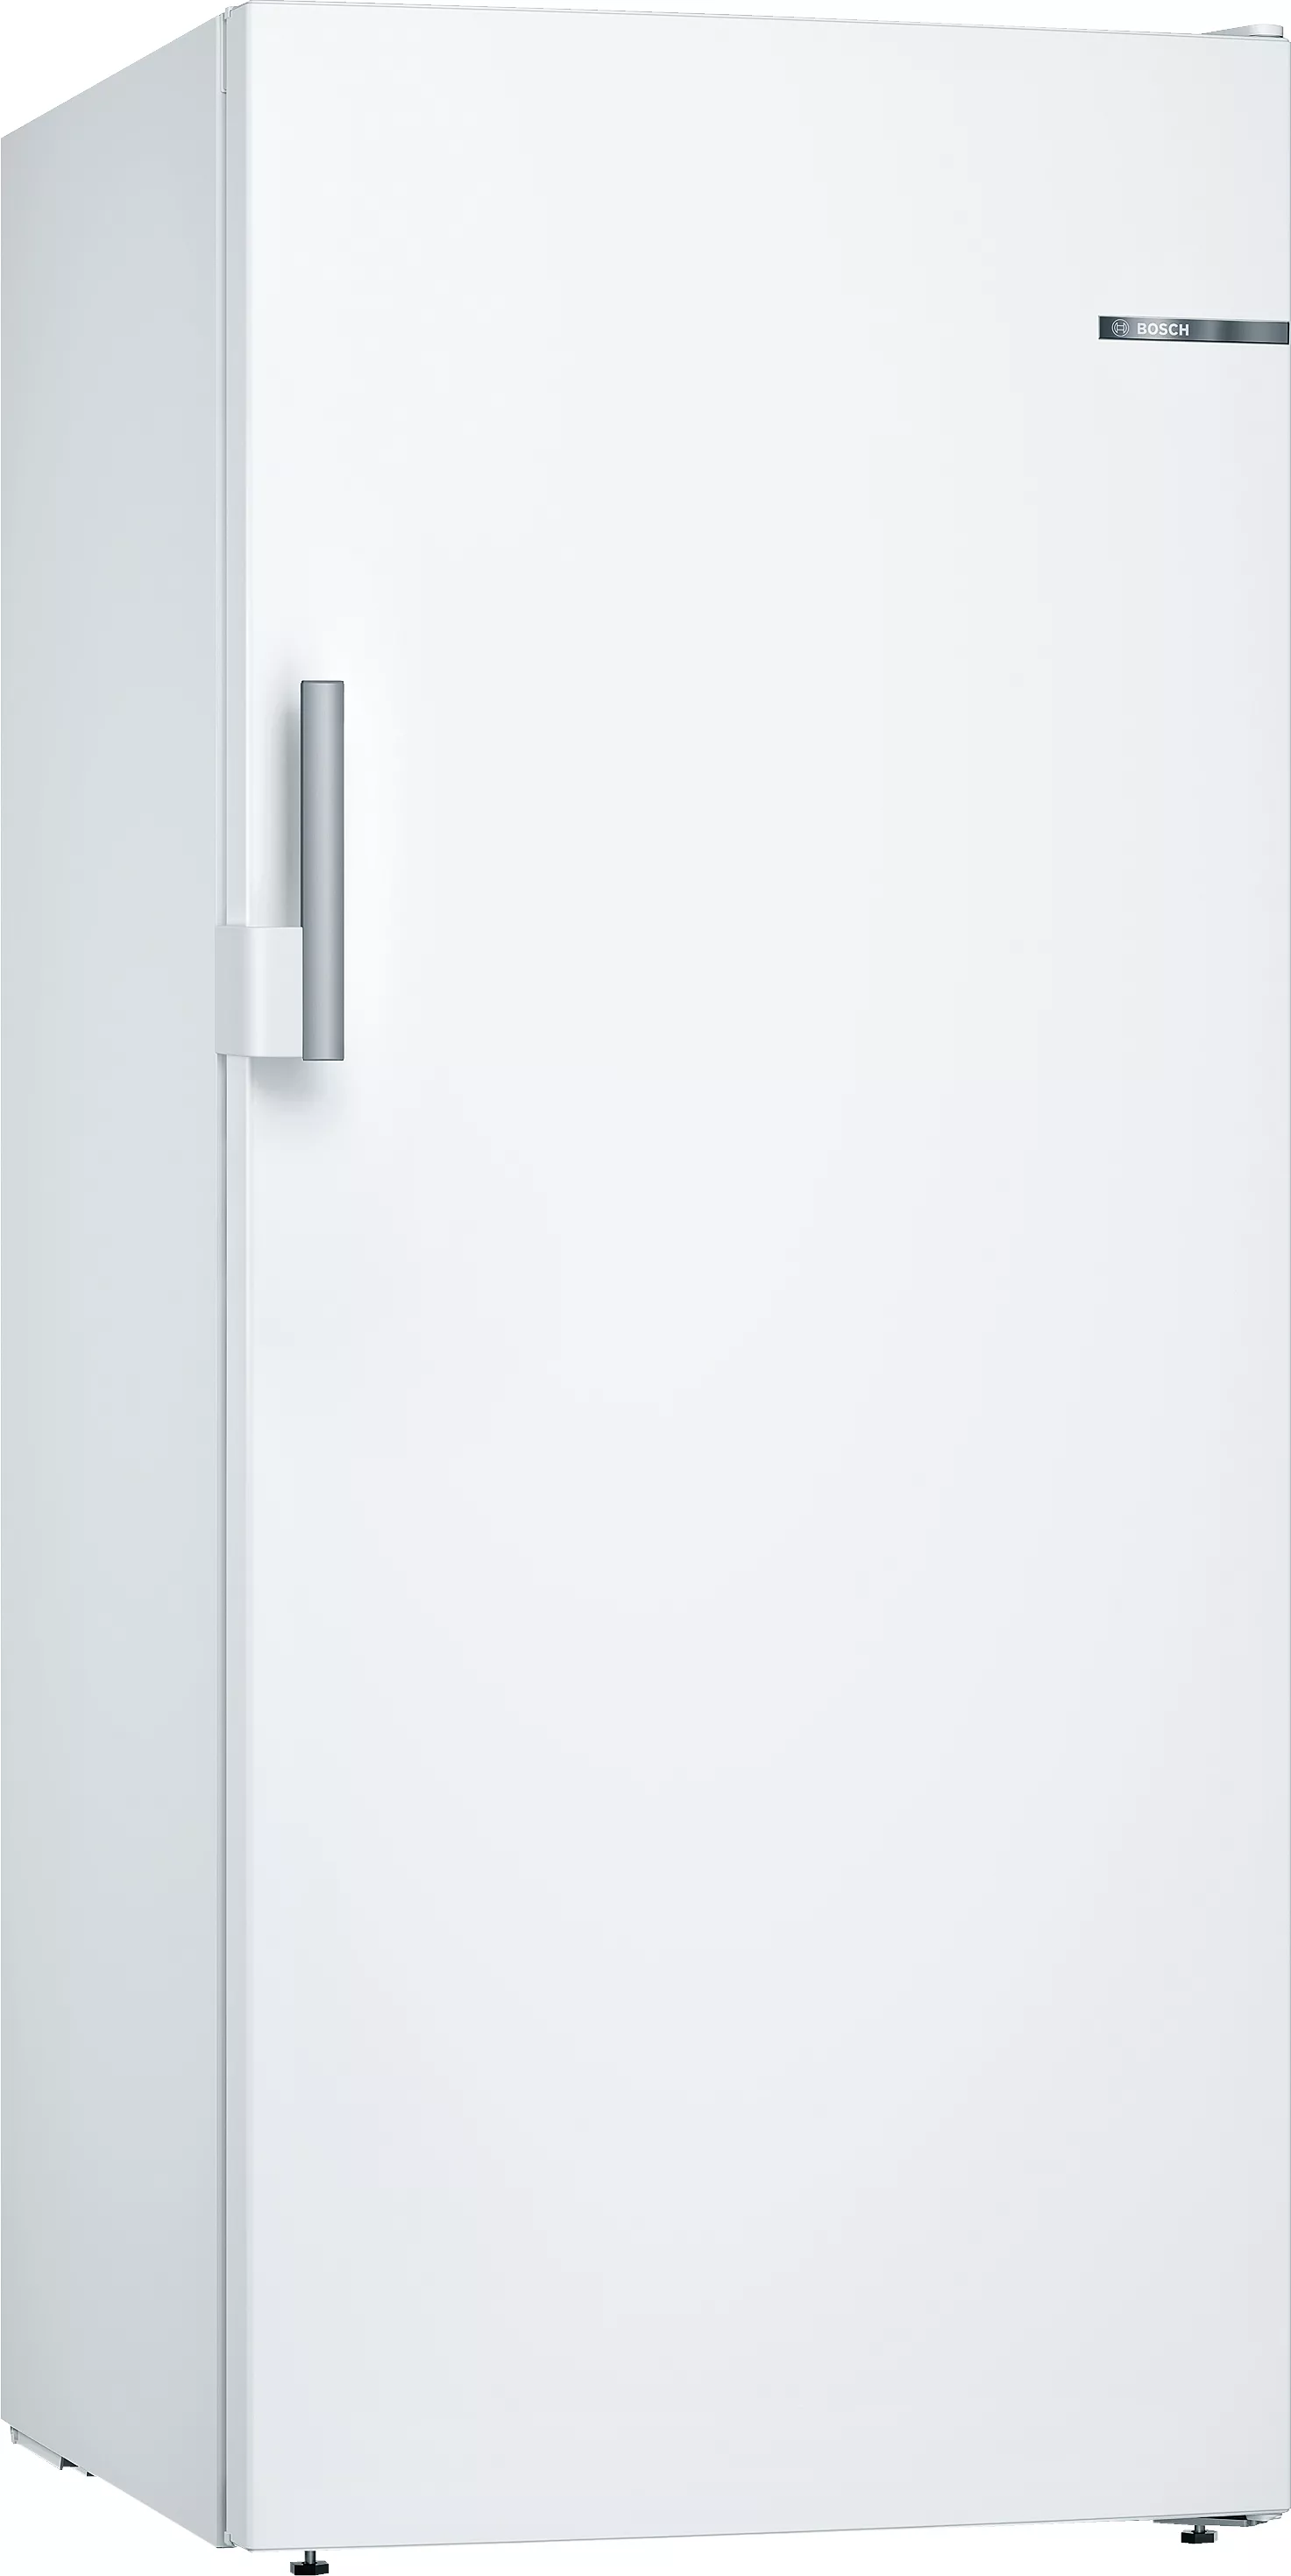 Bosch Serie 6, GSN51EWDV Freistehender Gefrierschrank, 161x70 cm, Weiß